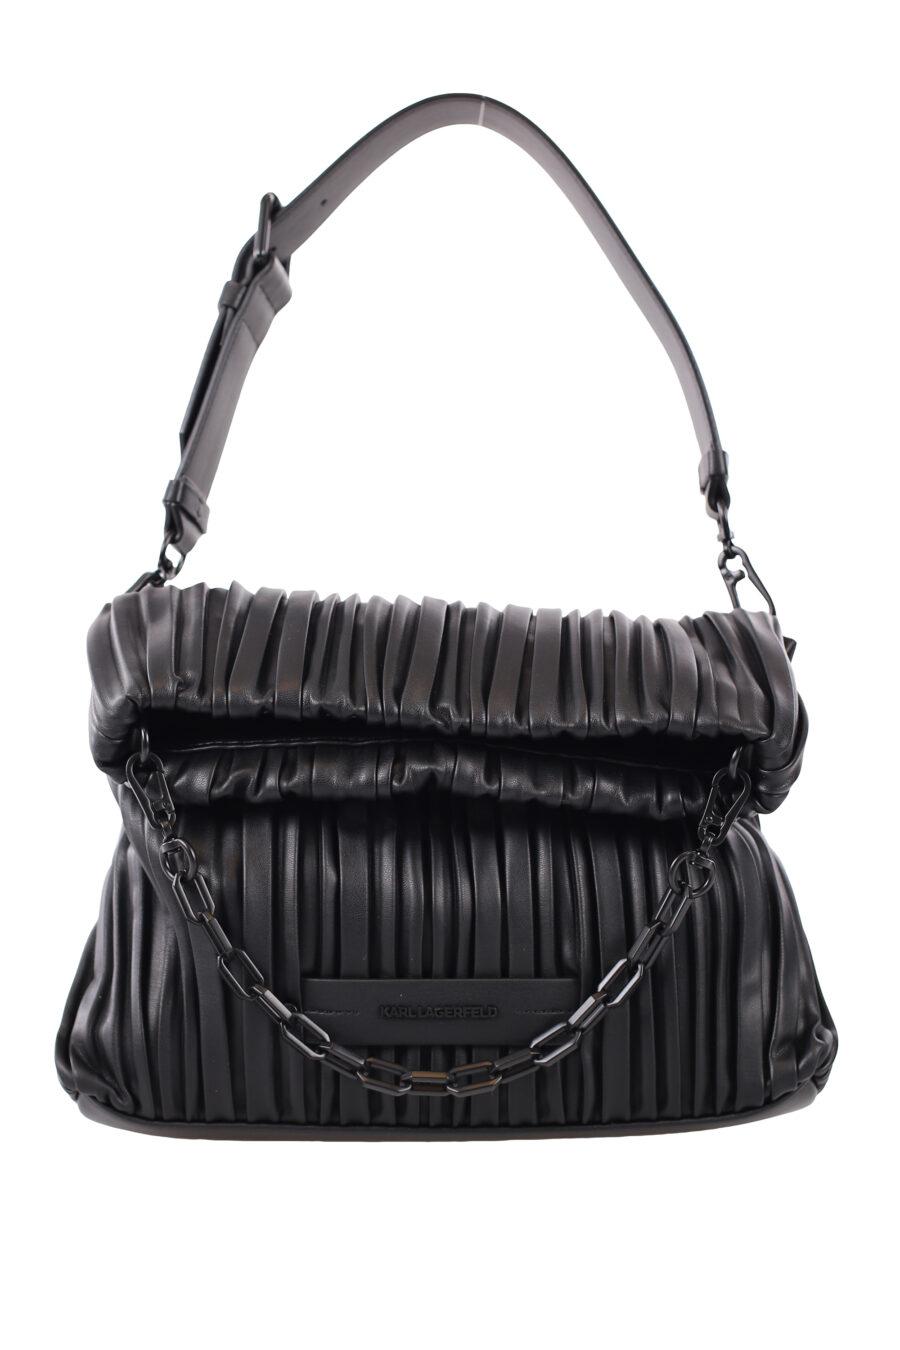 Faltbare schwarze Tasche mit einfarbigem Logo - IMG 1651